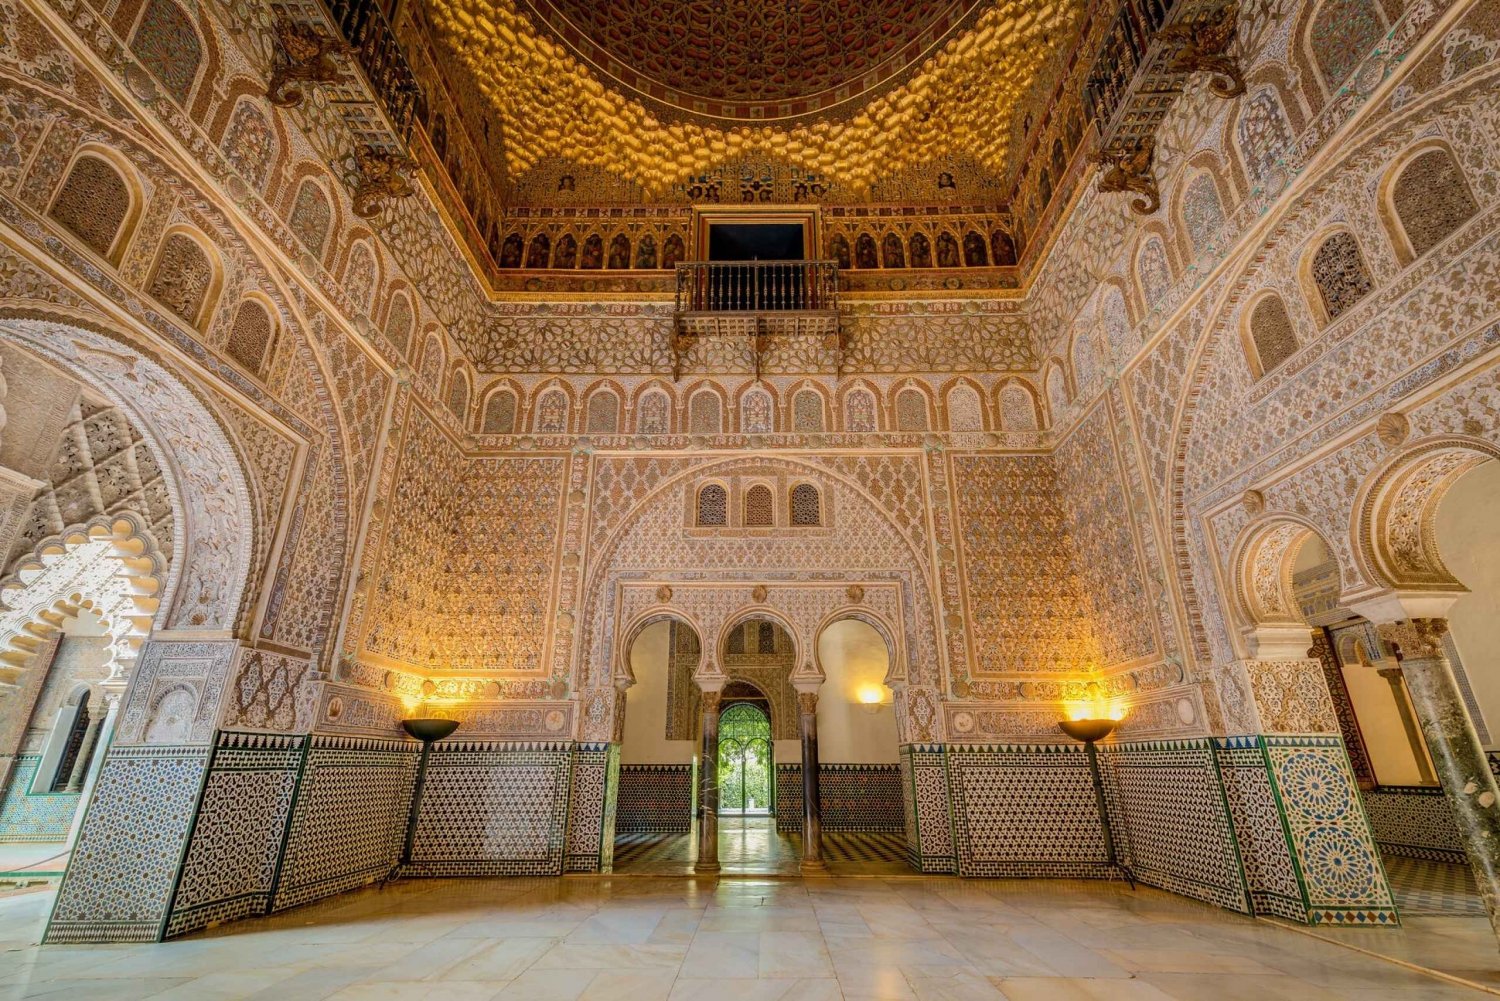 Da Costa do Sol: Passeio de um dia em Sevilha com a visita ao Real Alcázar